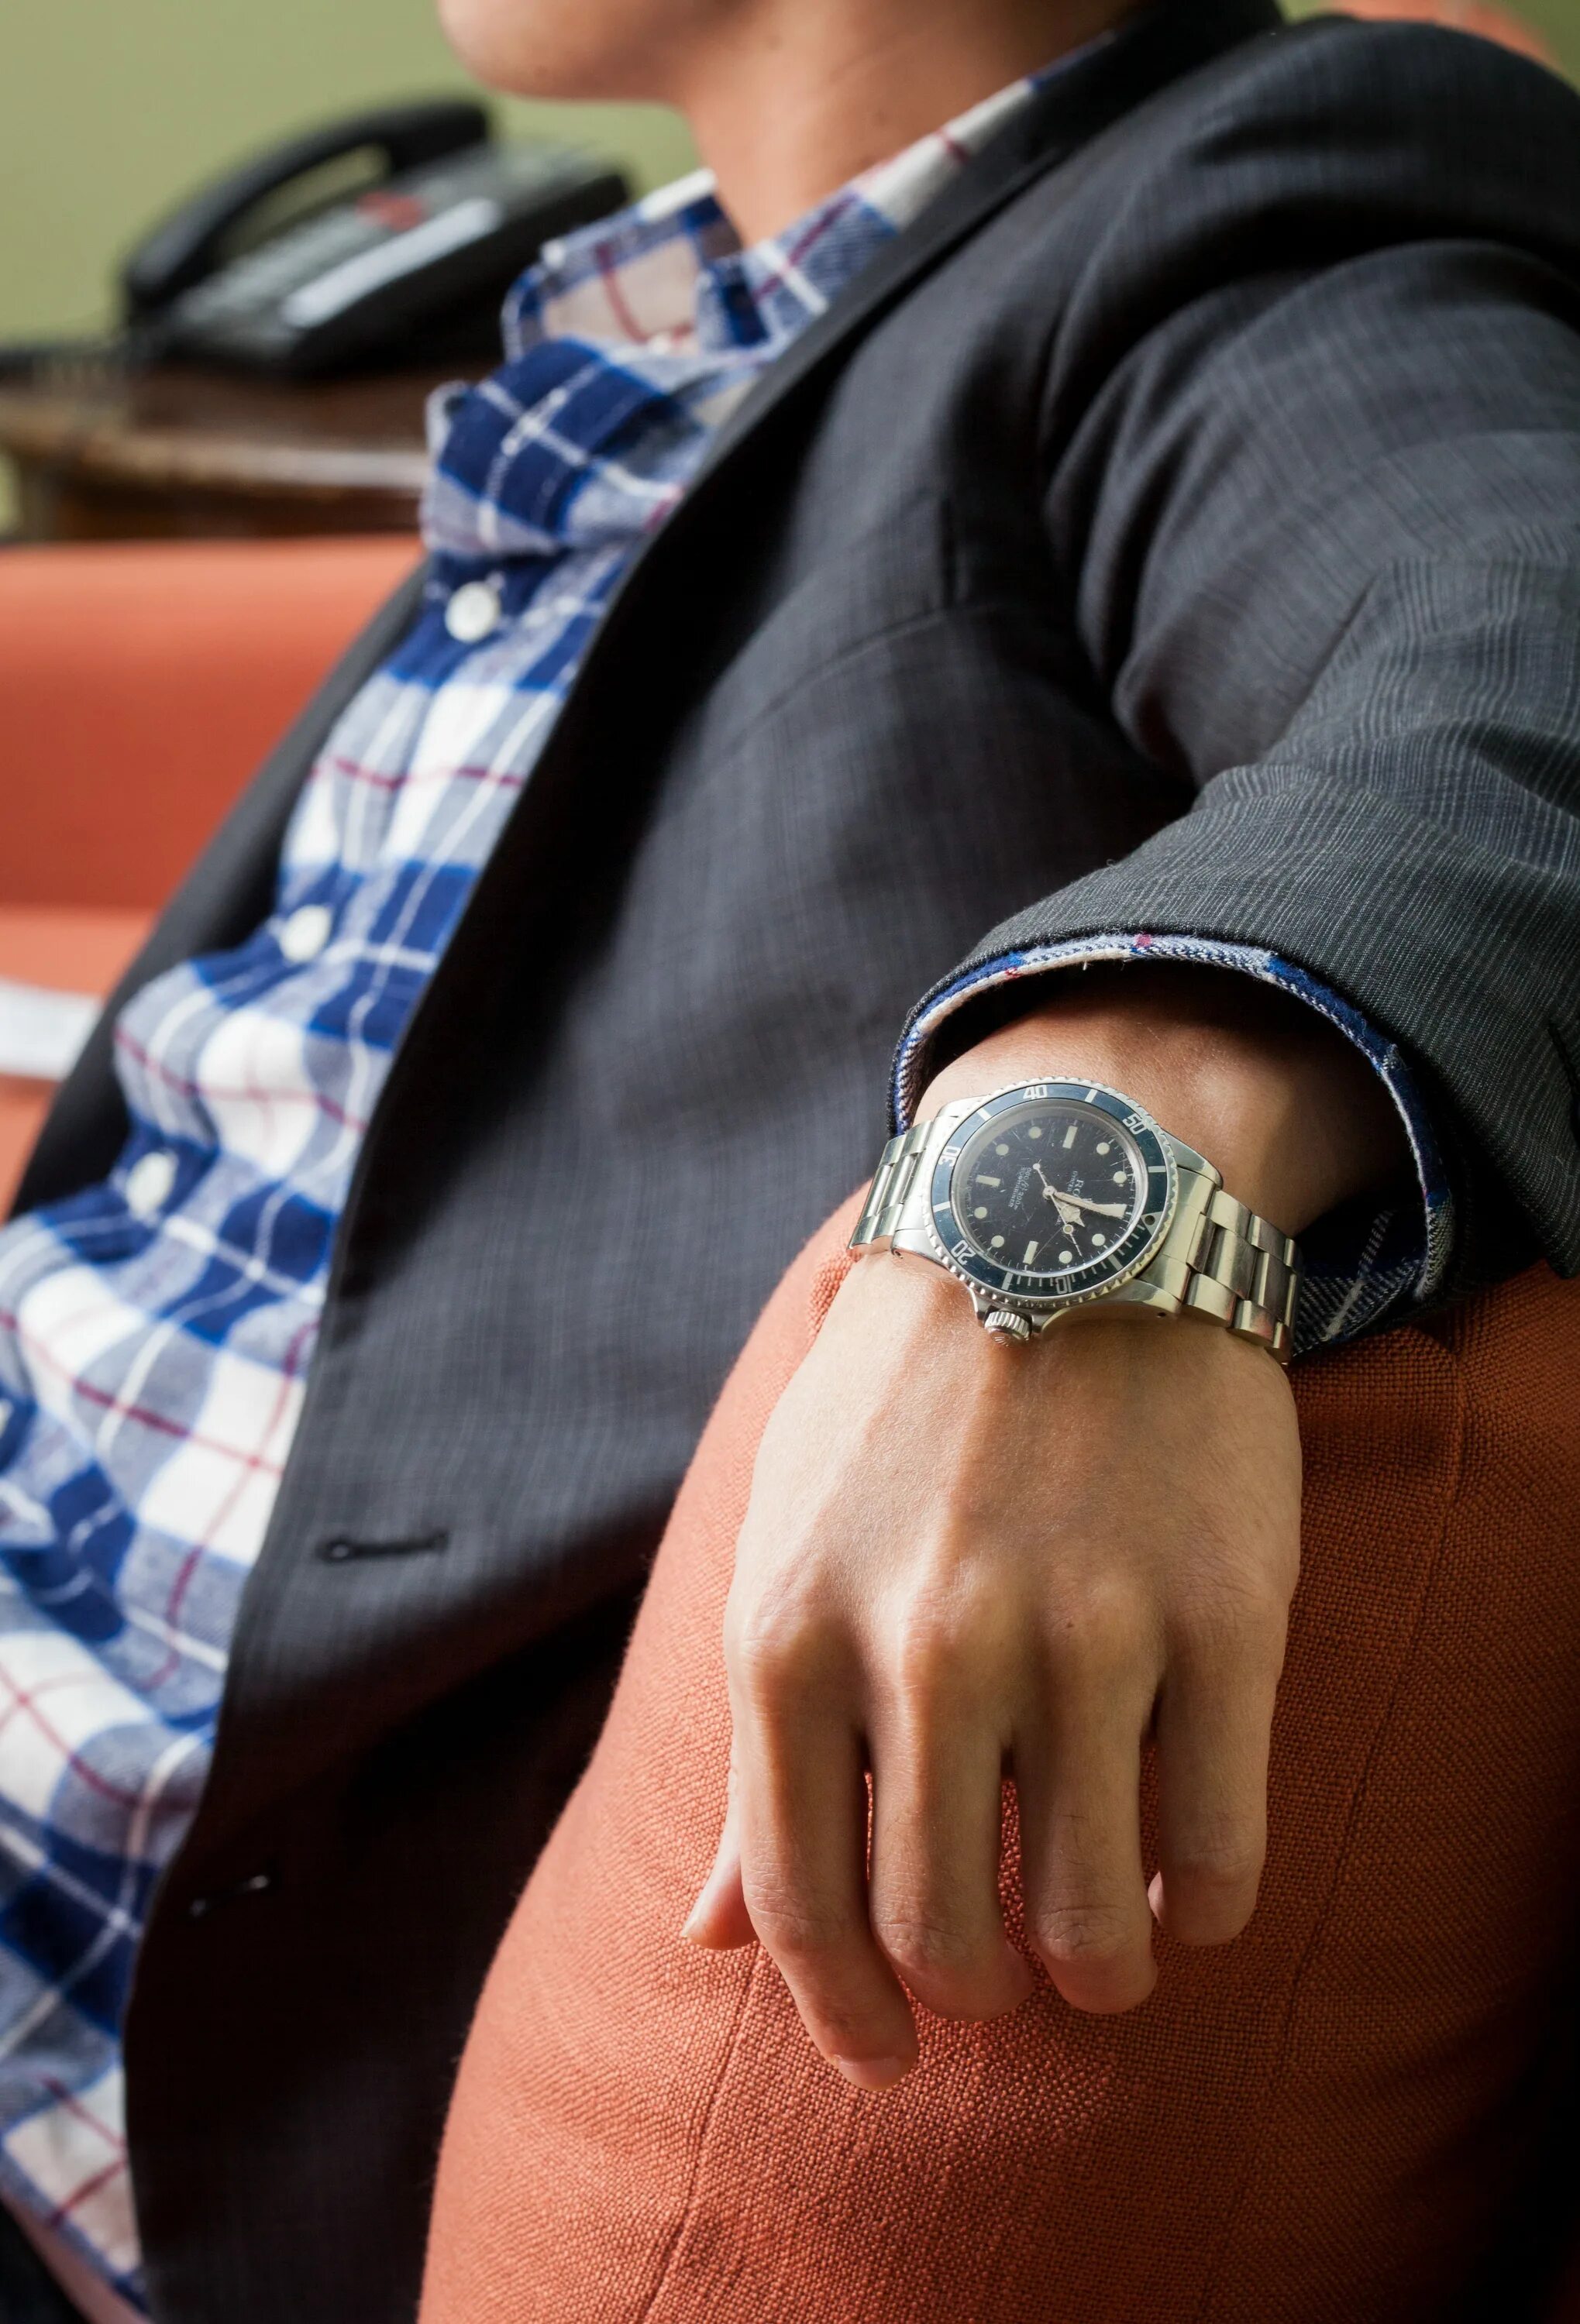 Rolex Submariner on hand. Мужские часы на руке. Рука часы элегантная. Мужчина с часами на руке.